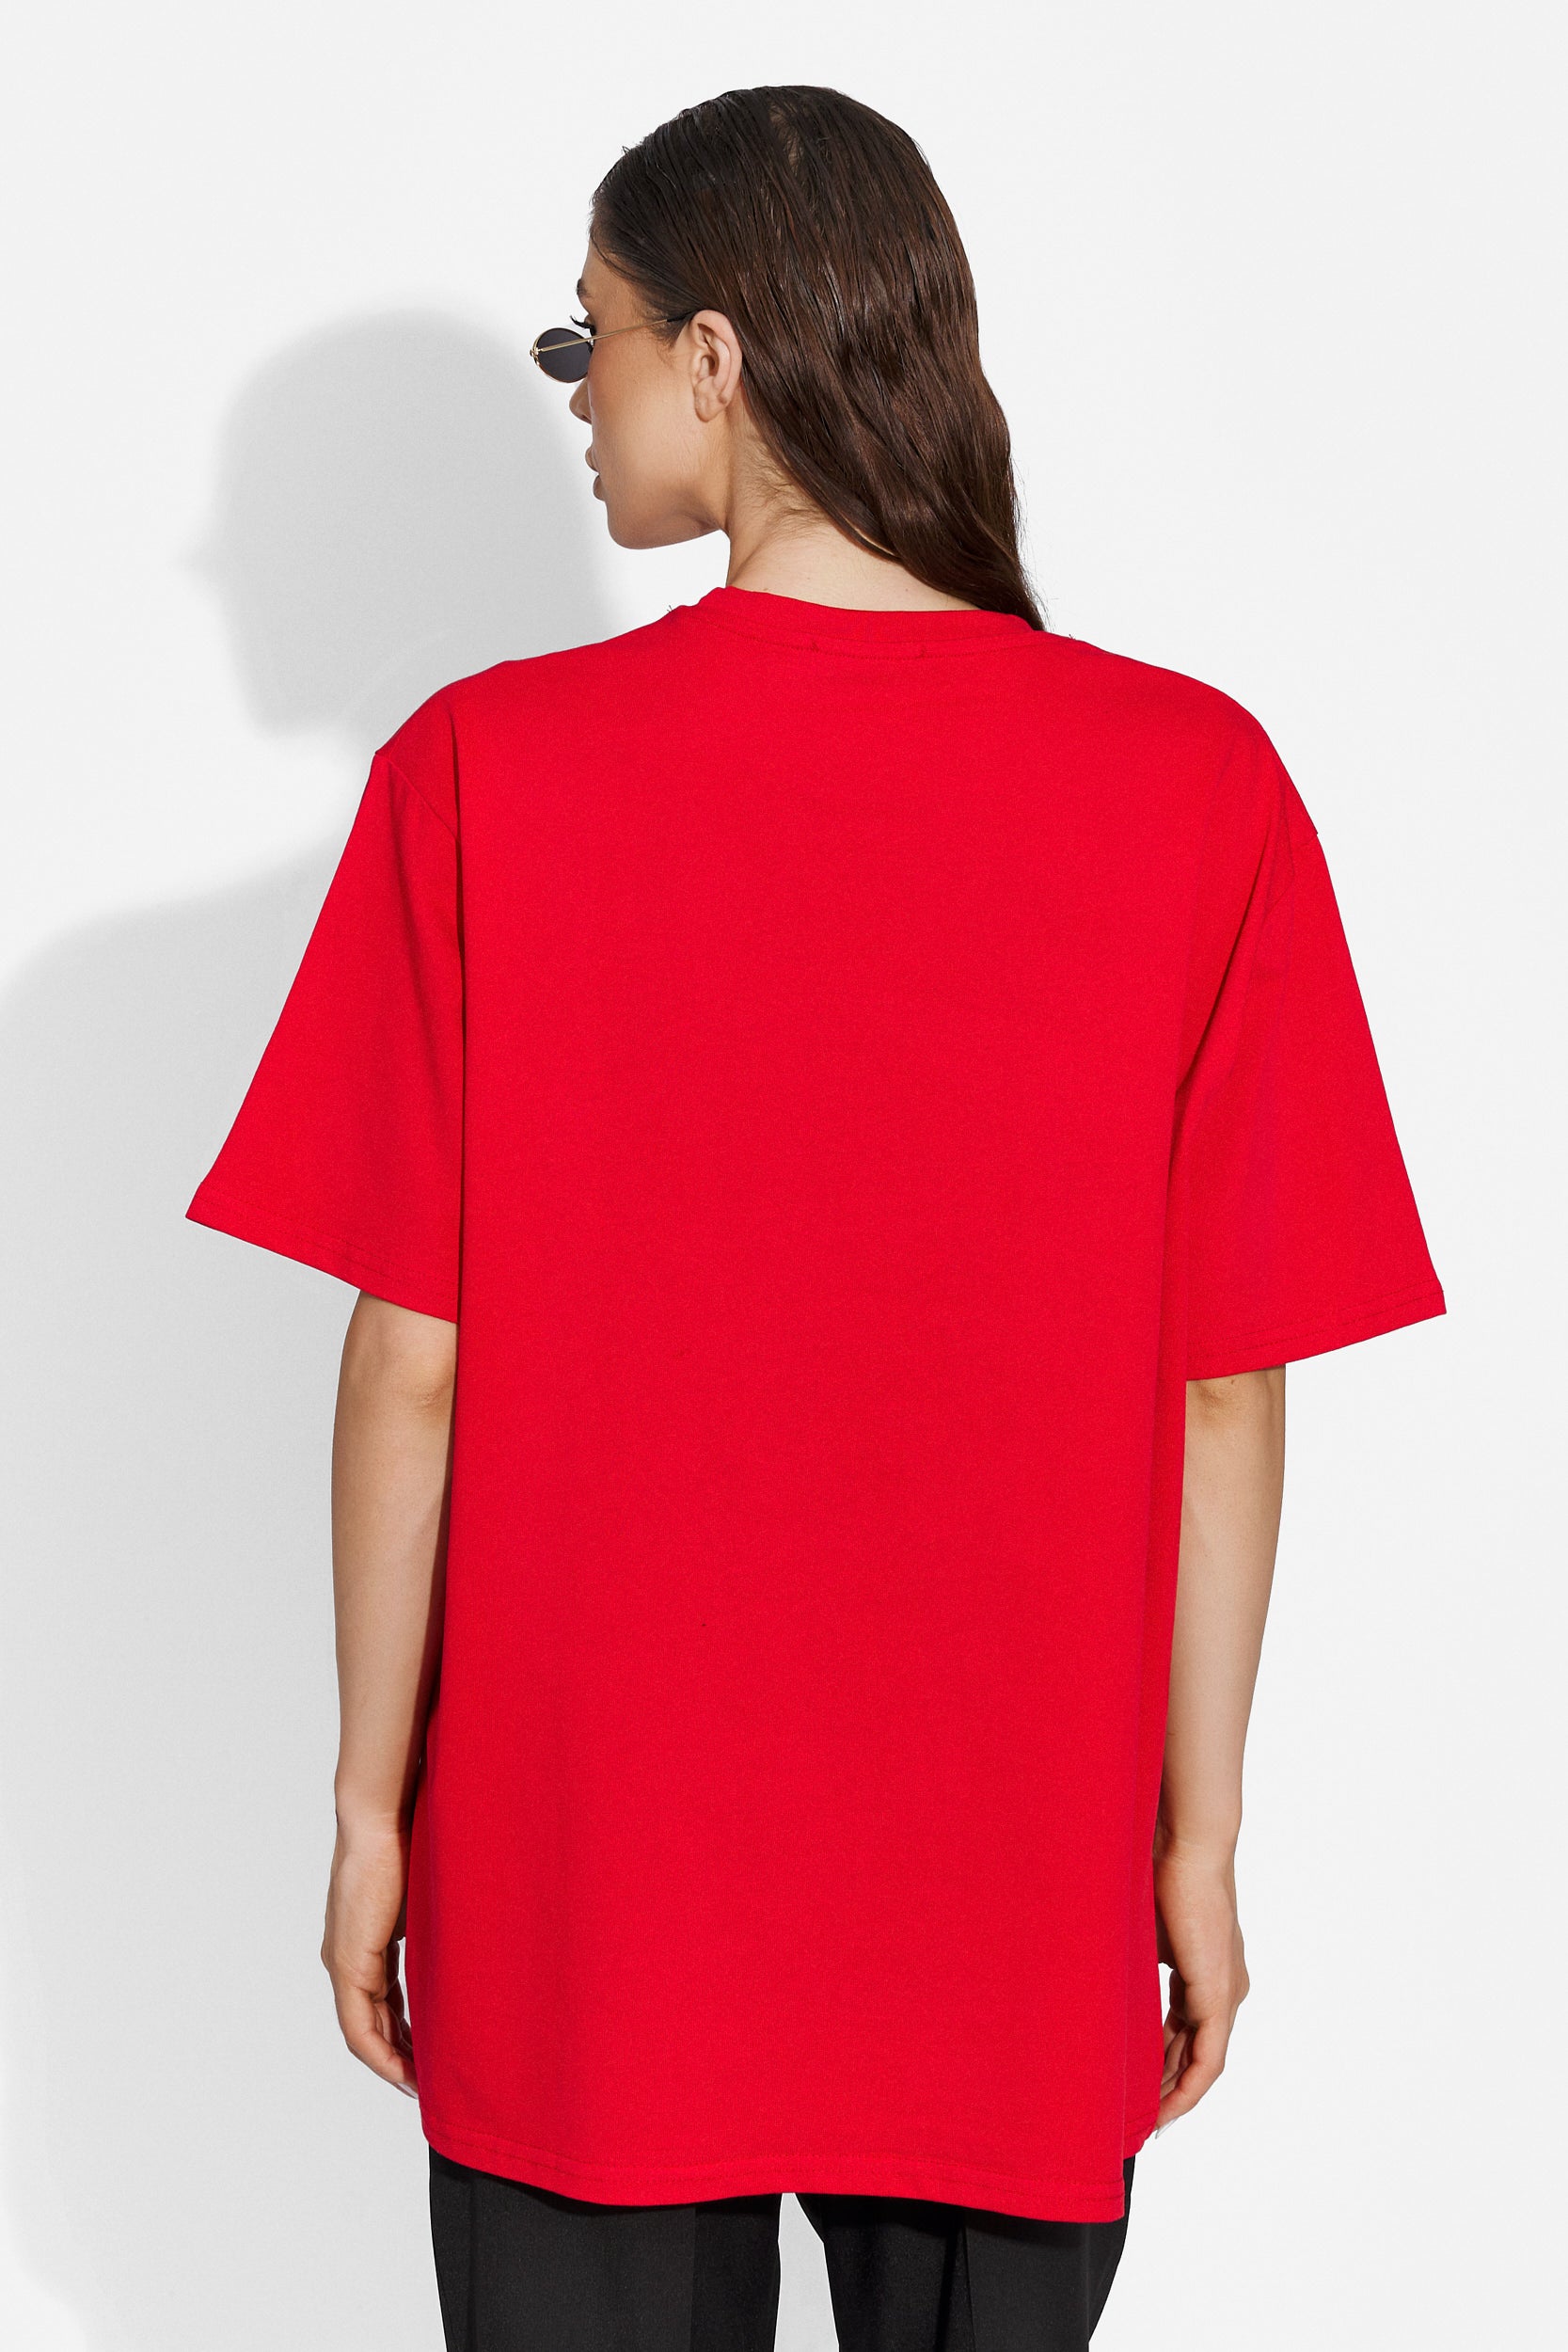 Forlany Bogas обикновена червена дамска тениска